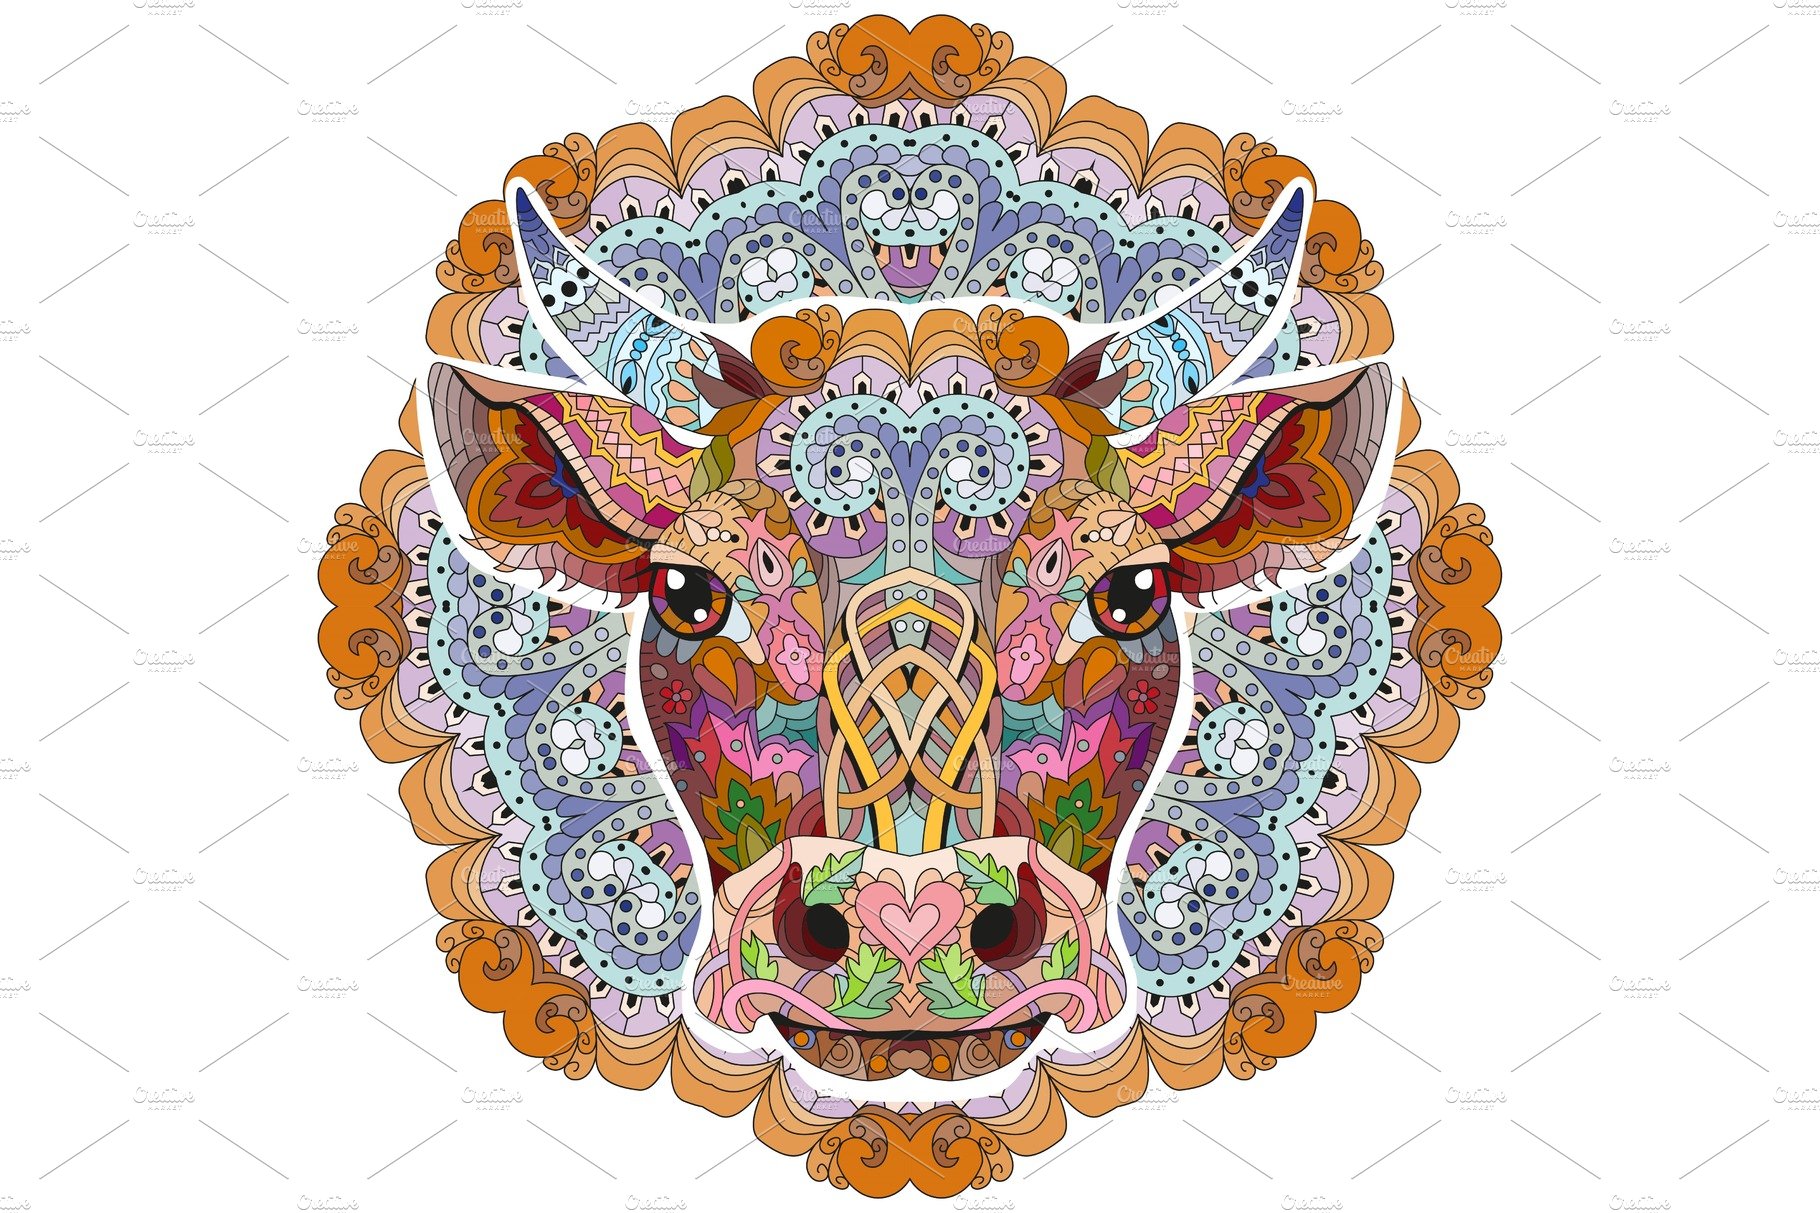 Bull head artwork illustration cover image.